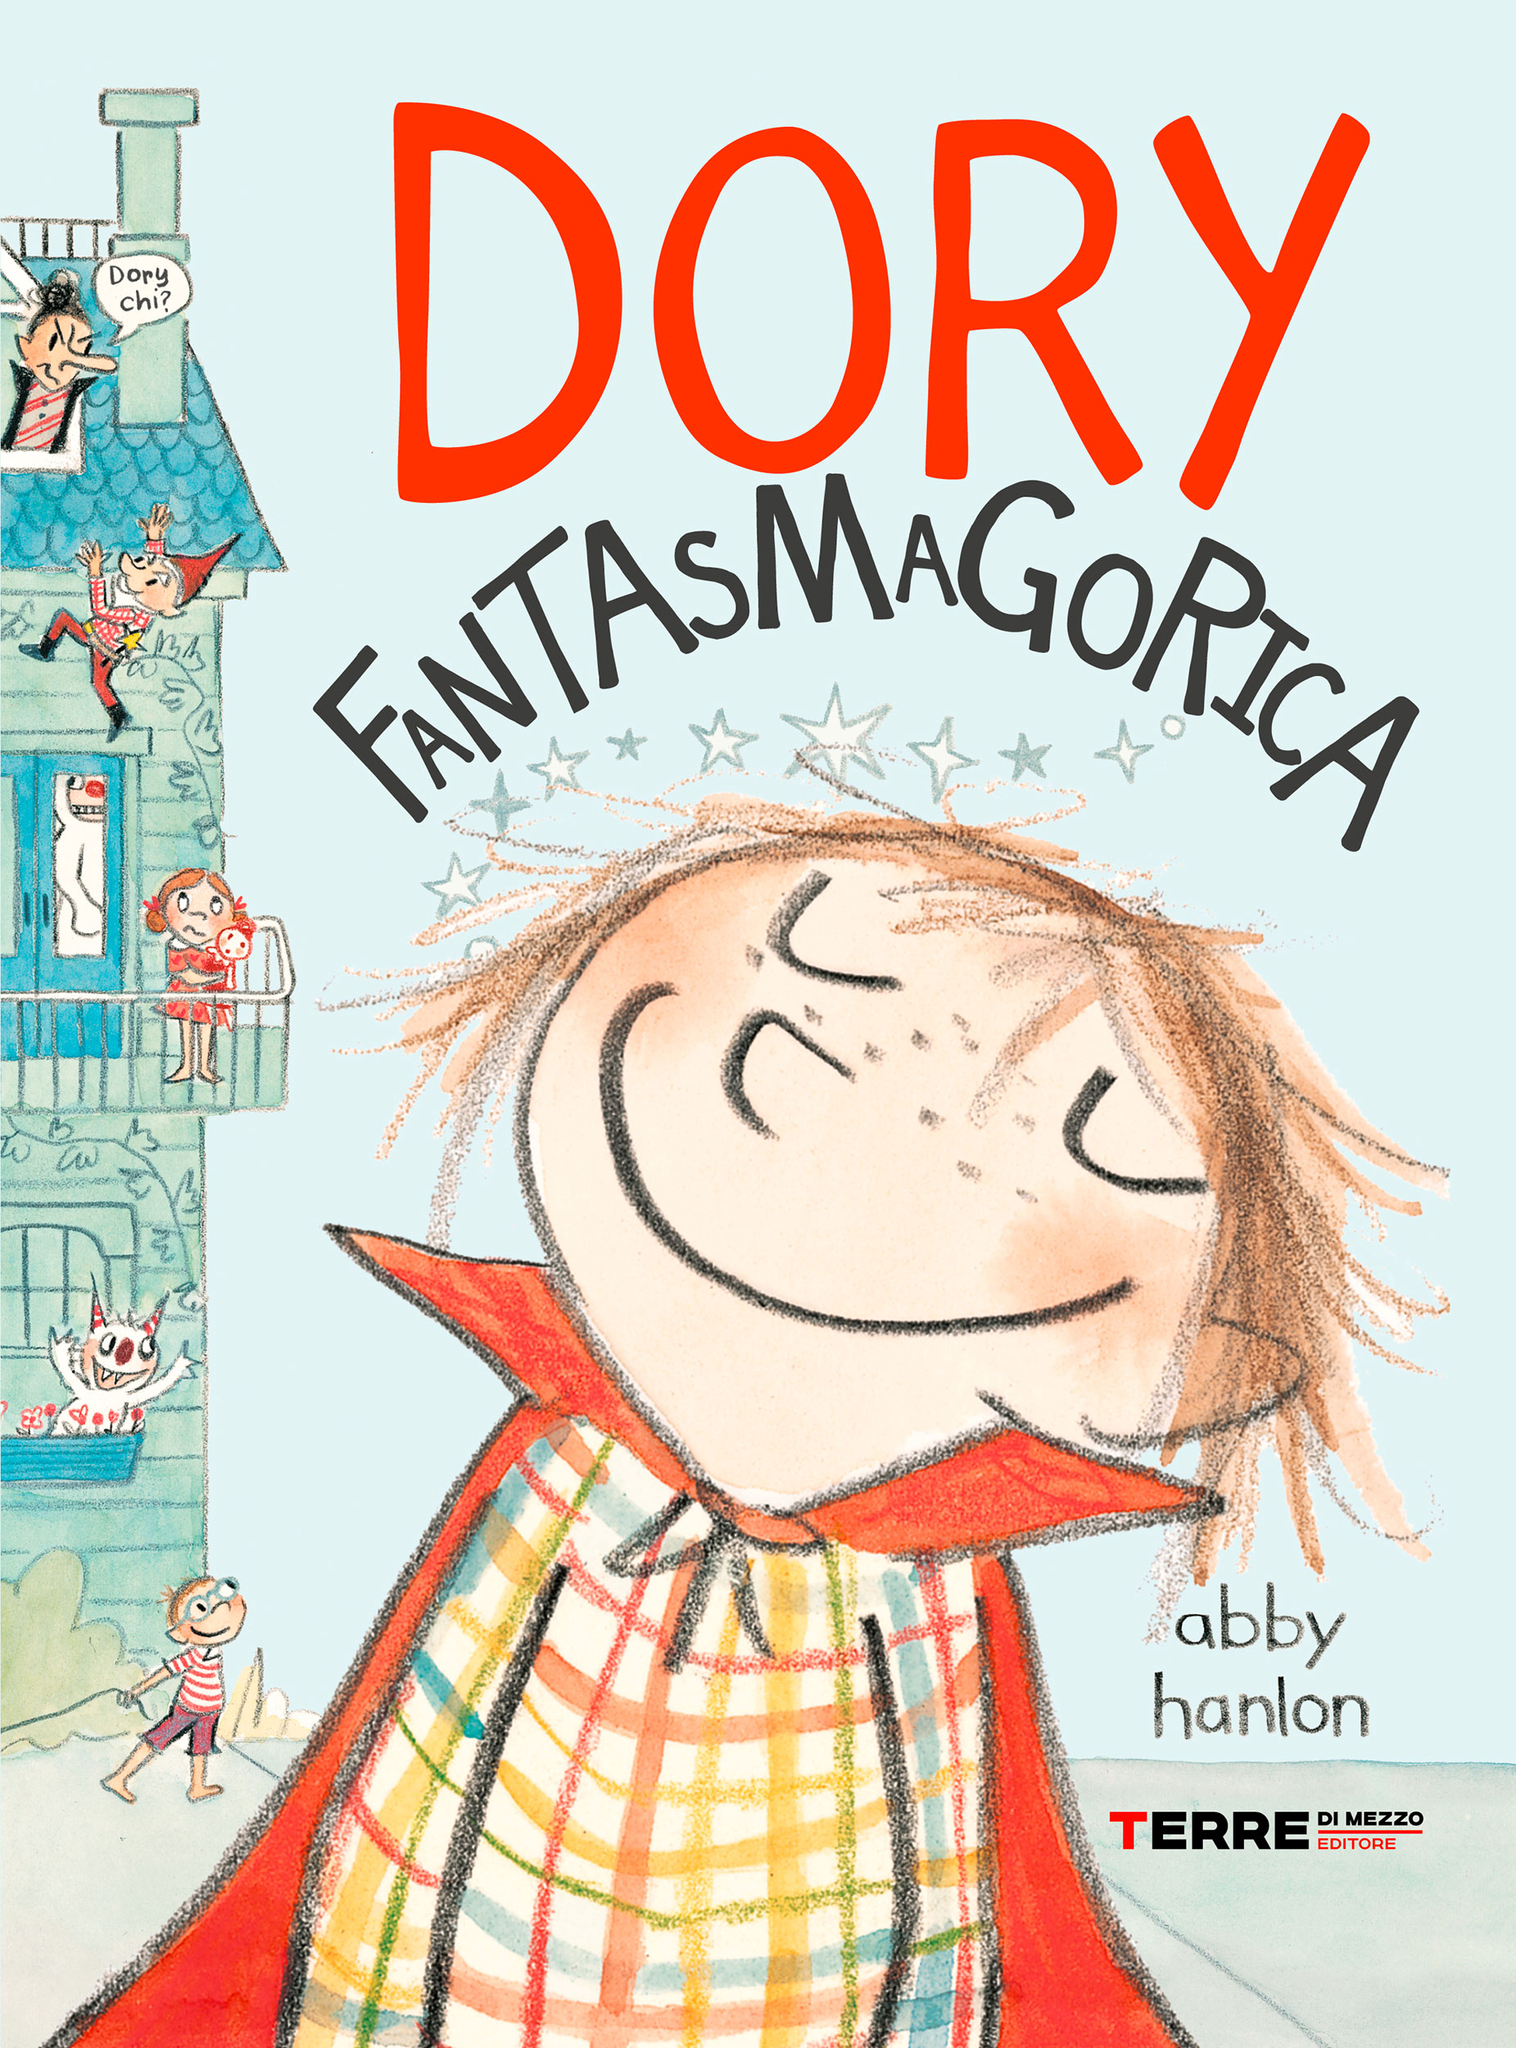 Book cover for Dory Fantasmagorica